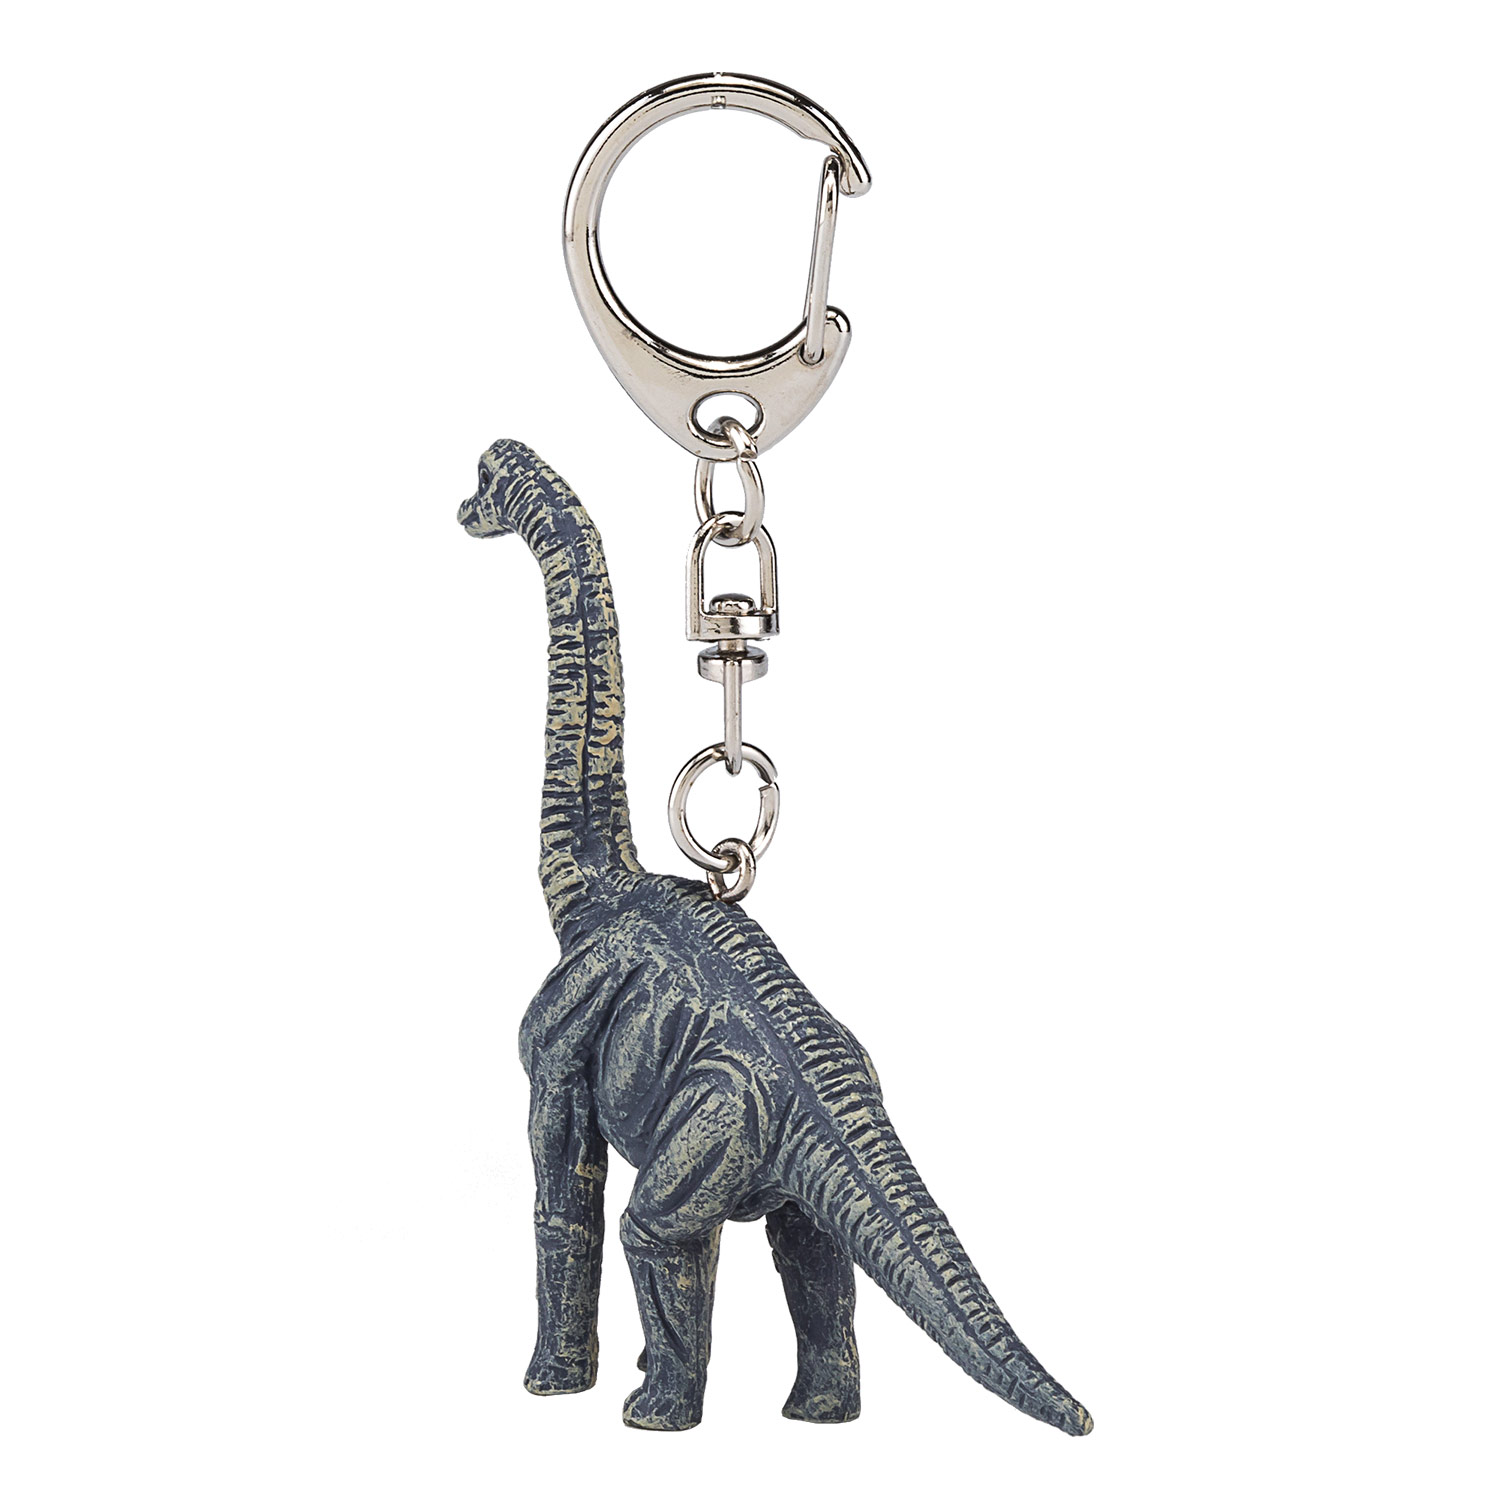 Porte-clés Mojo Brachiosaure - 387446